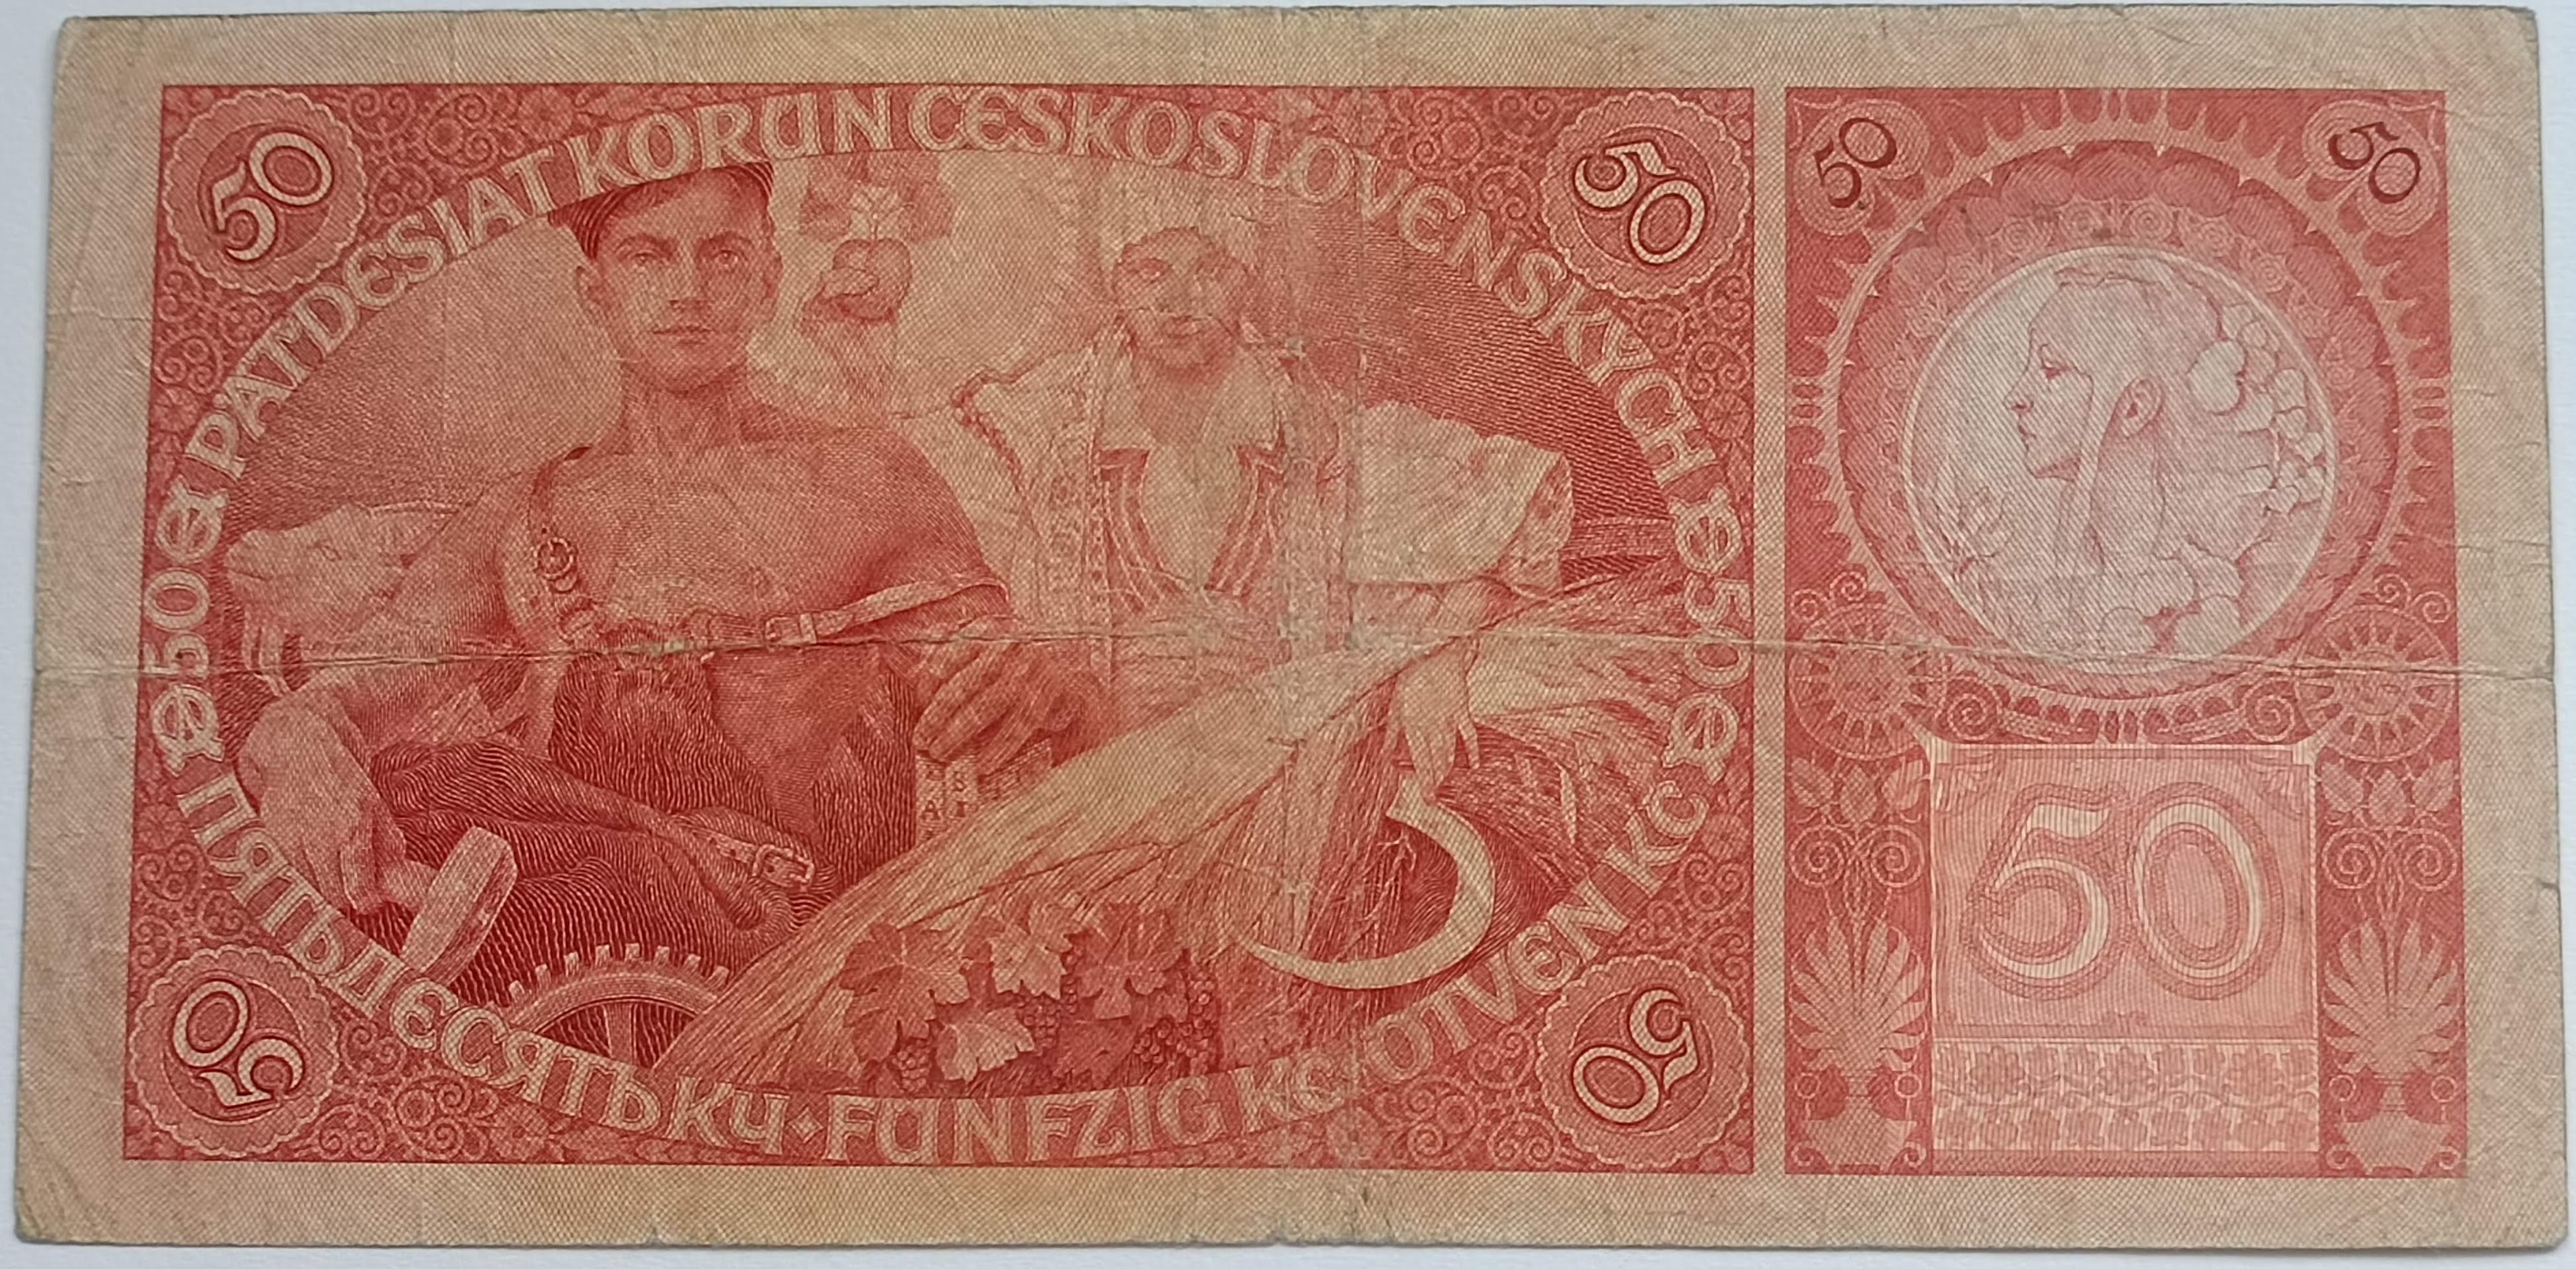 50 Kč 1929 Ba